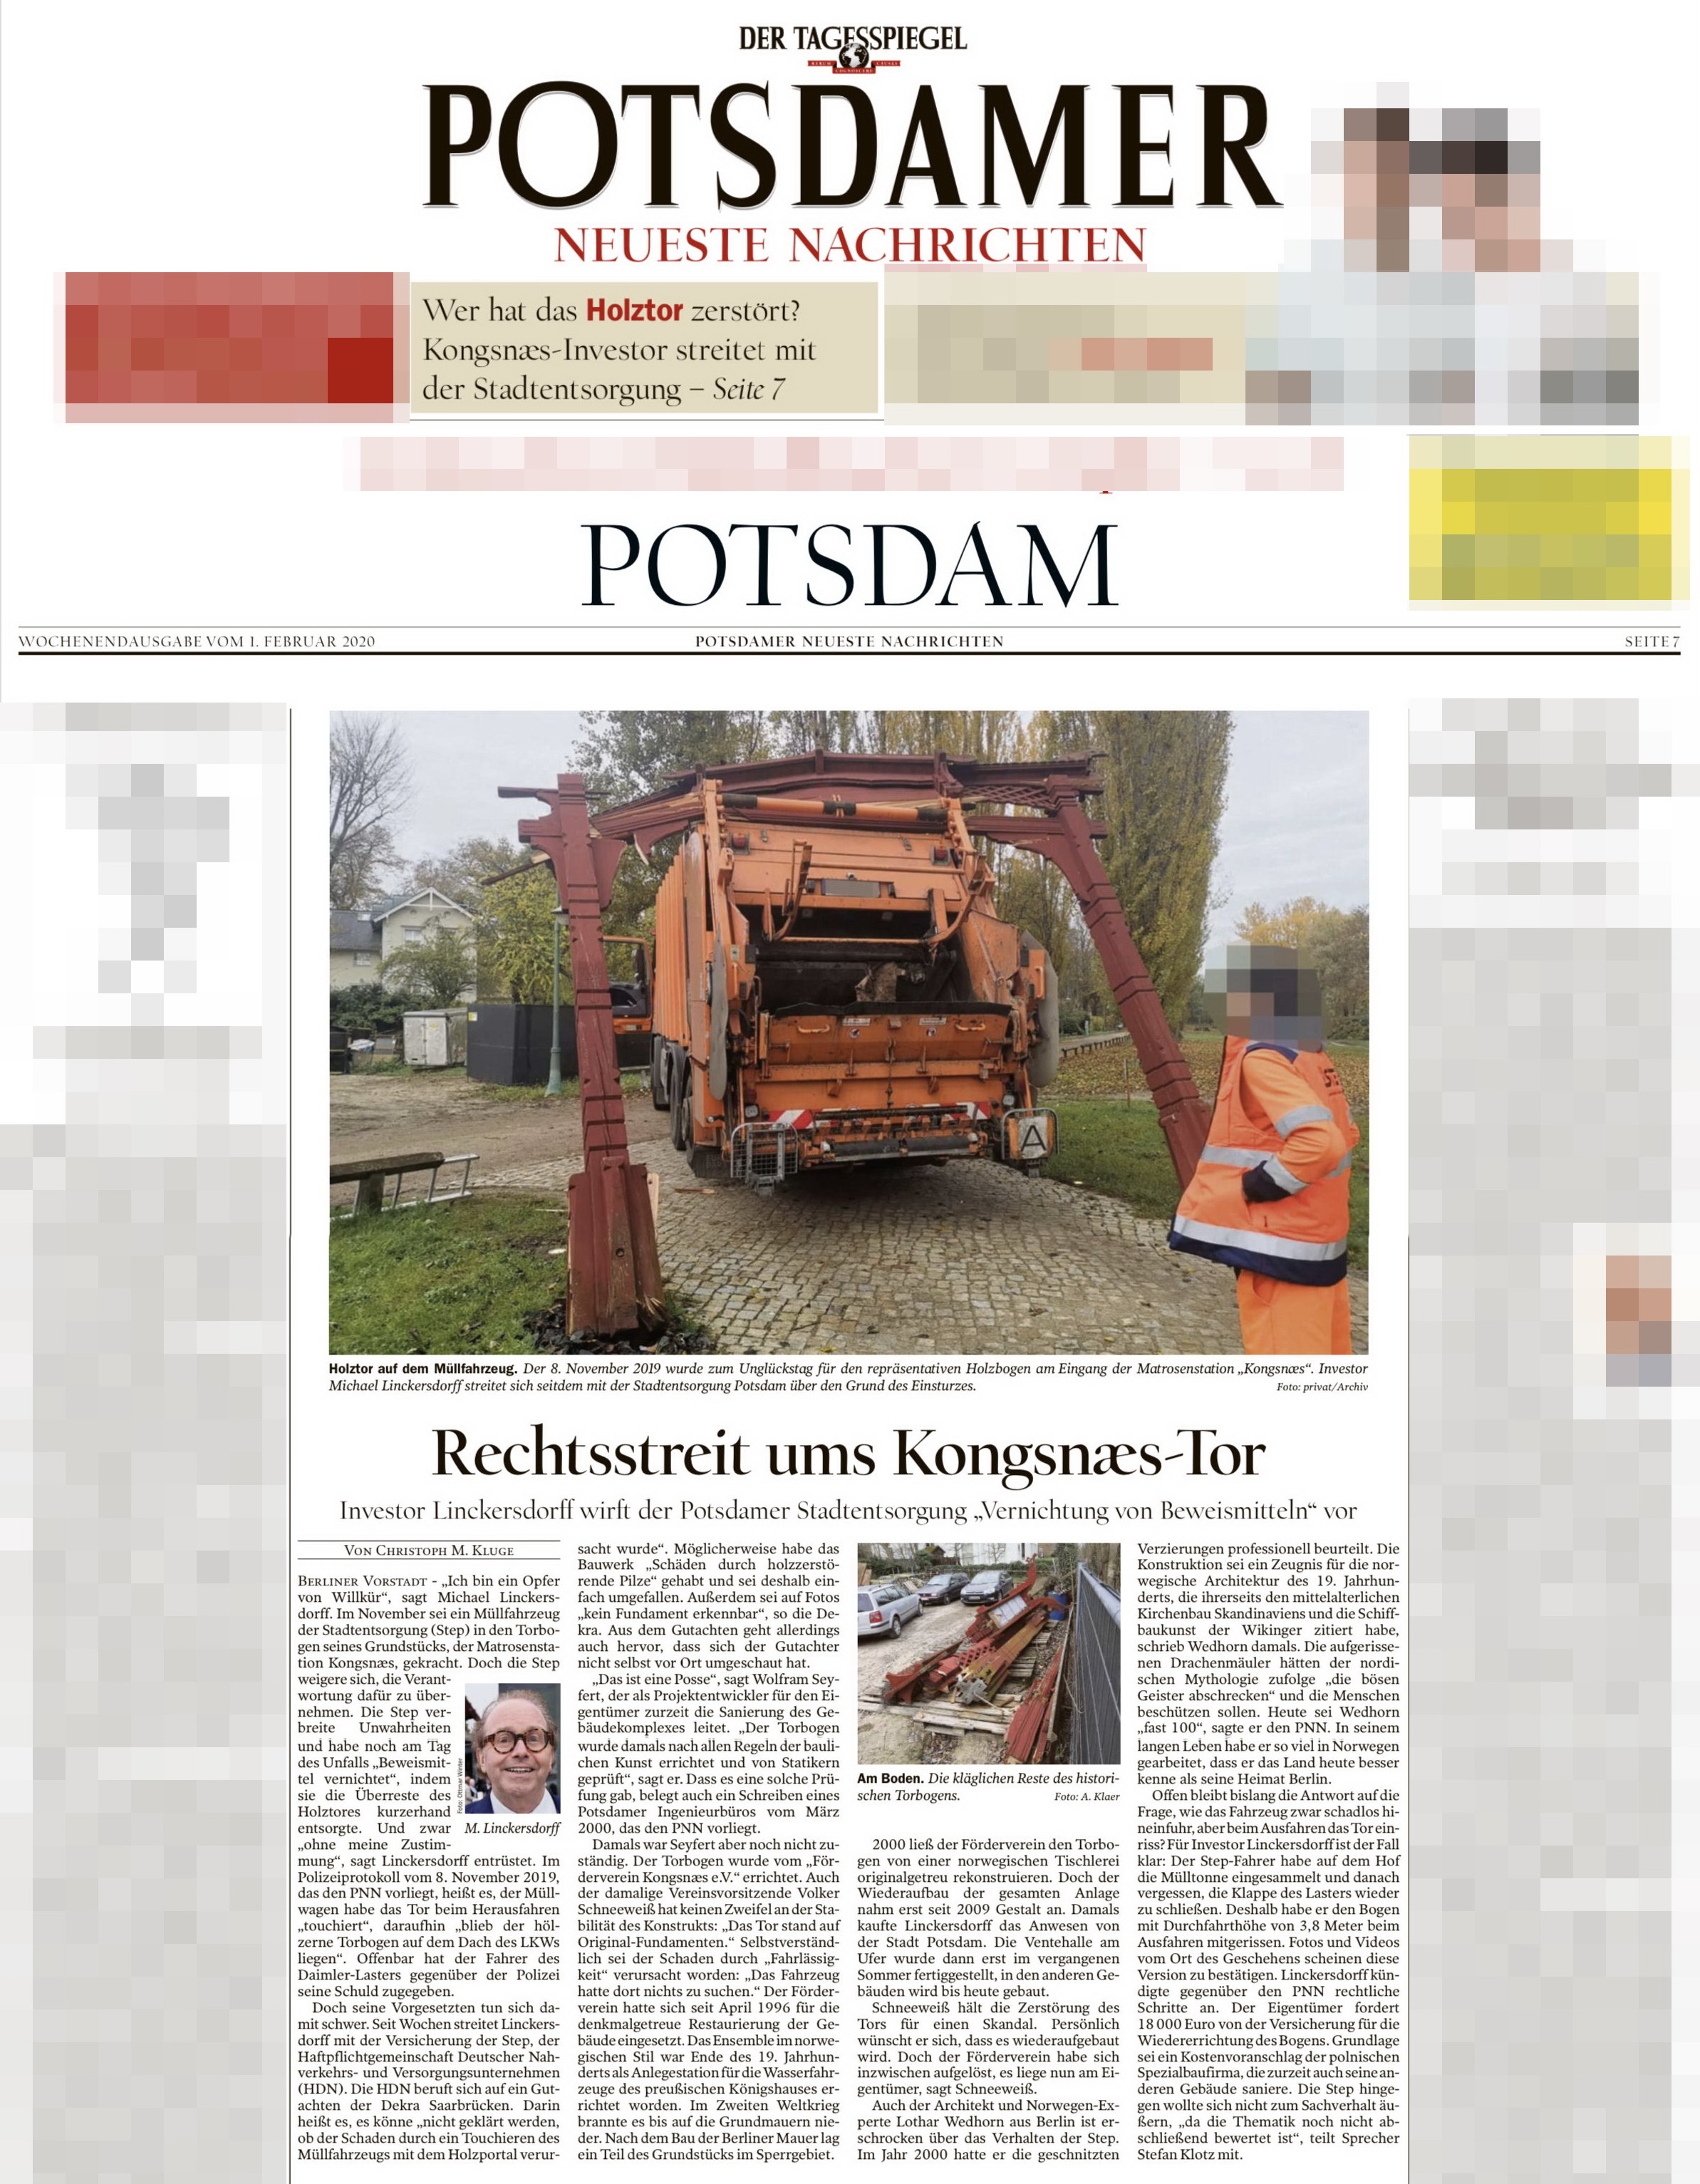 Potsdamer Neueste Nachrichten 01.02.2020